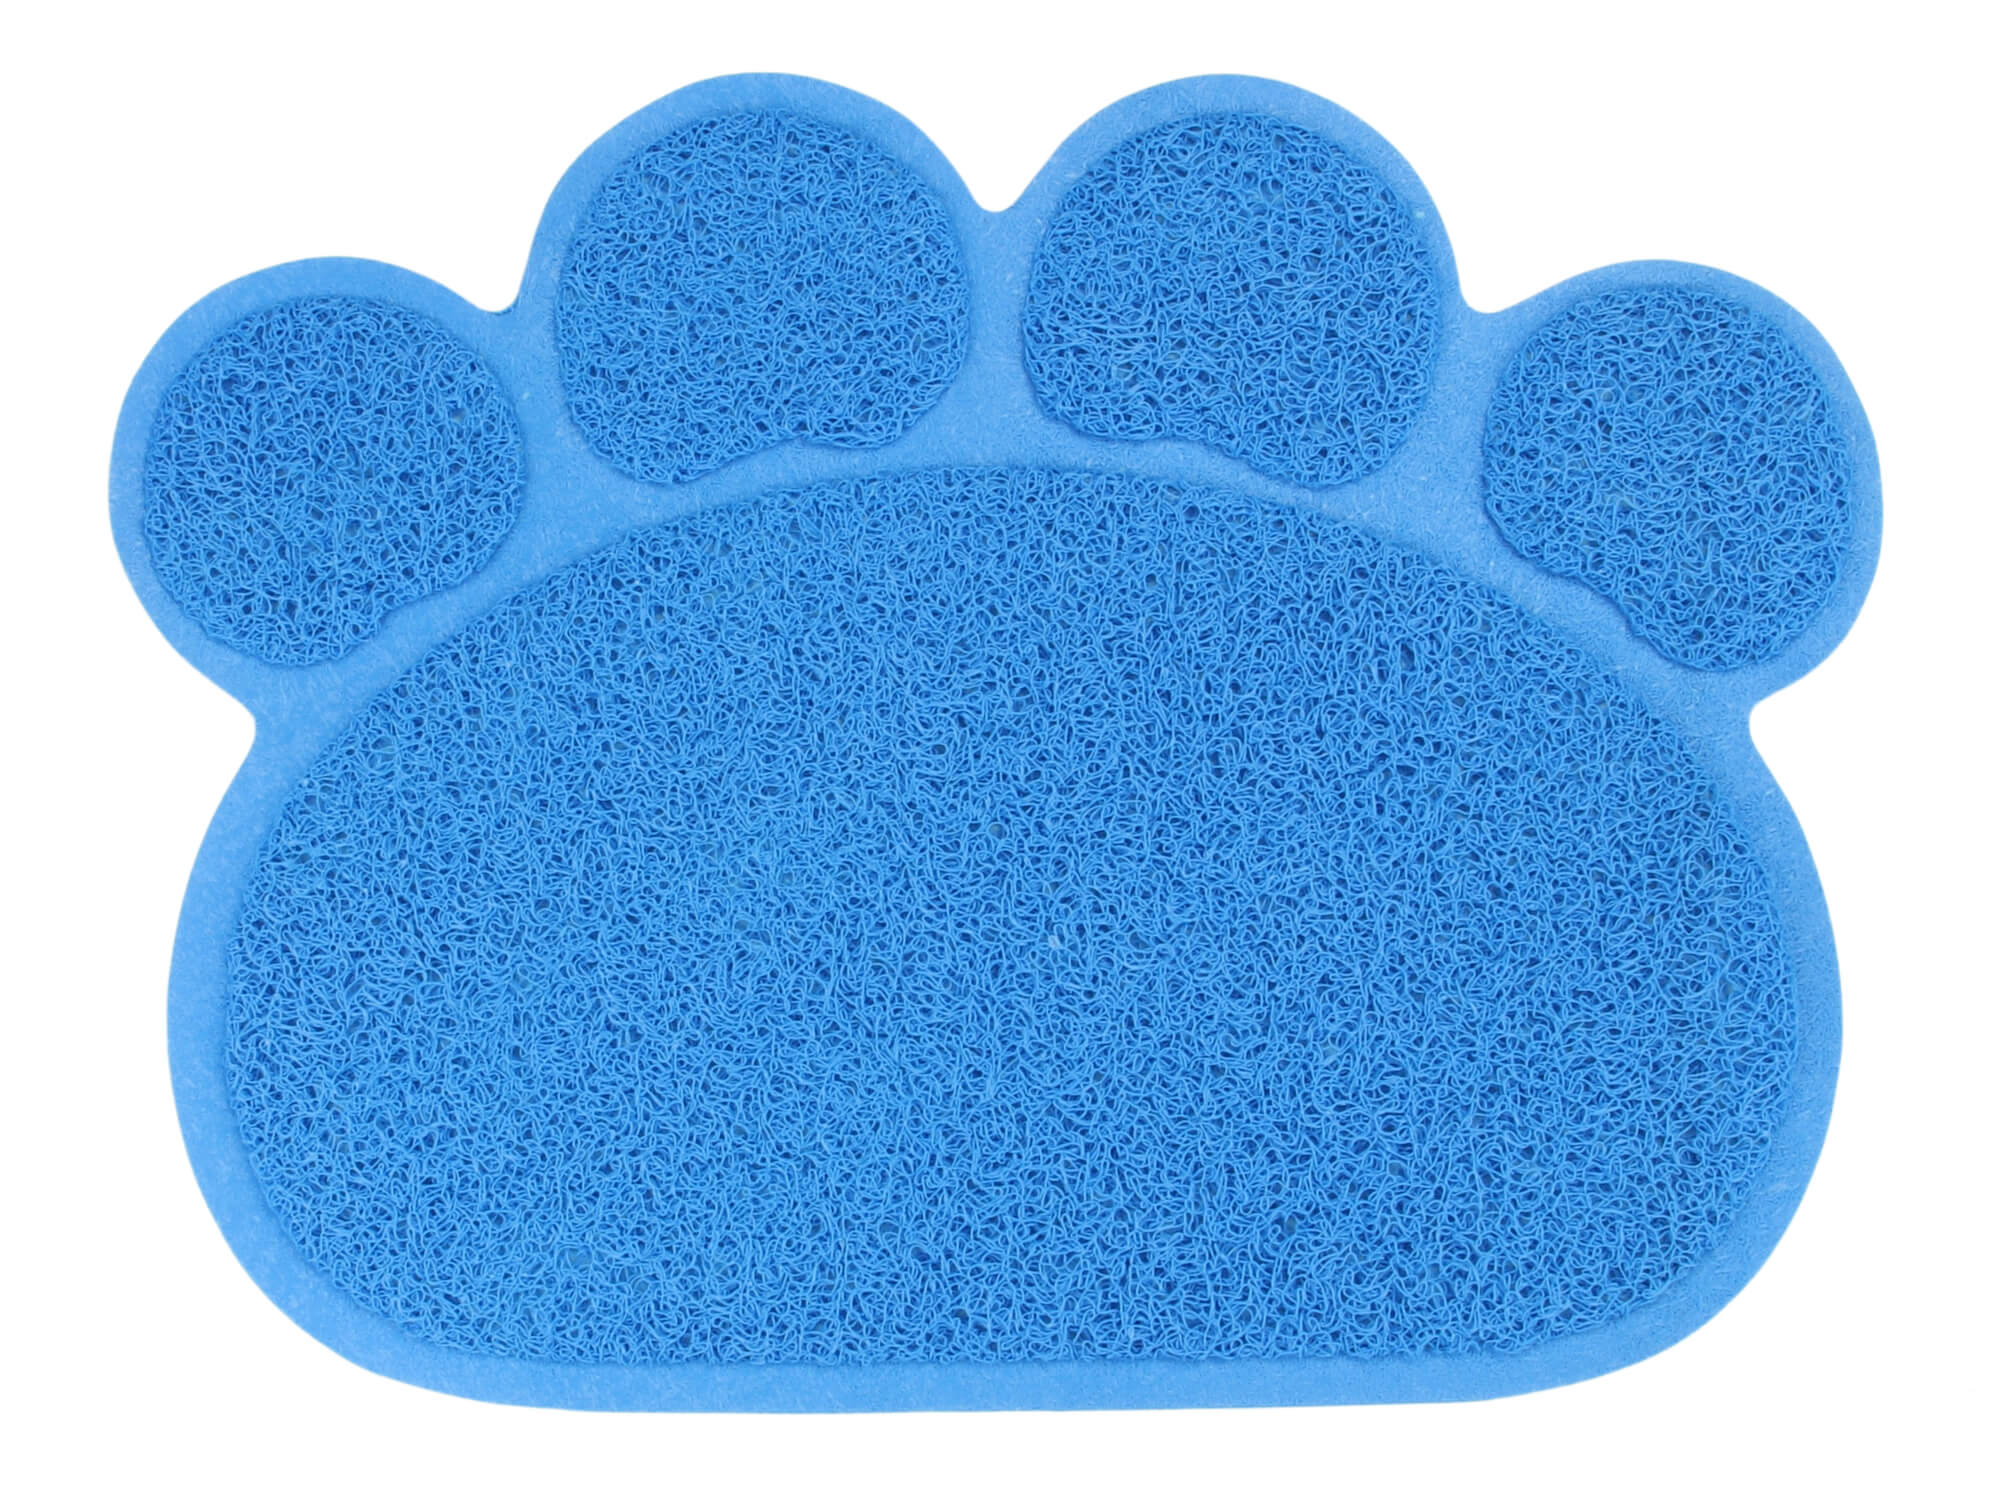 Gina podložka pod misky pro psa Barva: Modrá, Rozměr (cm): 40 x 30